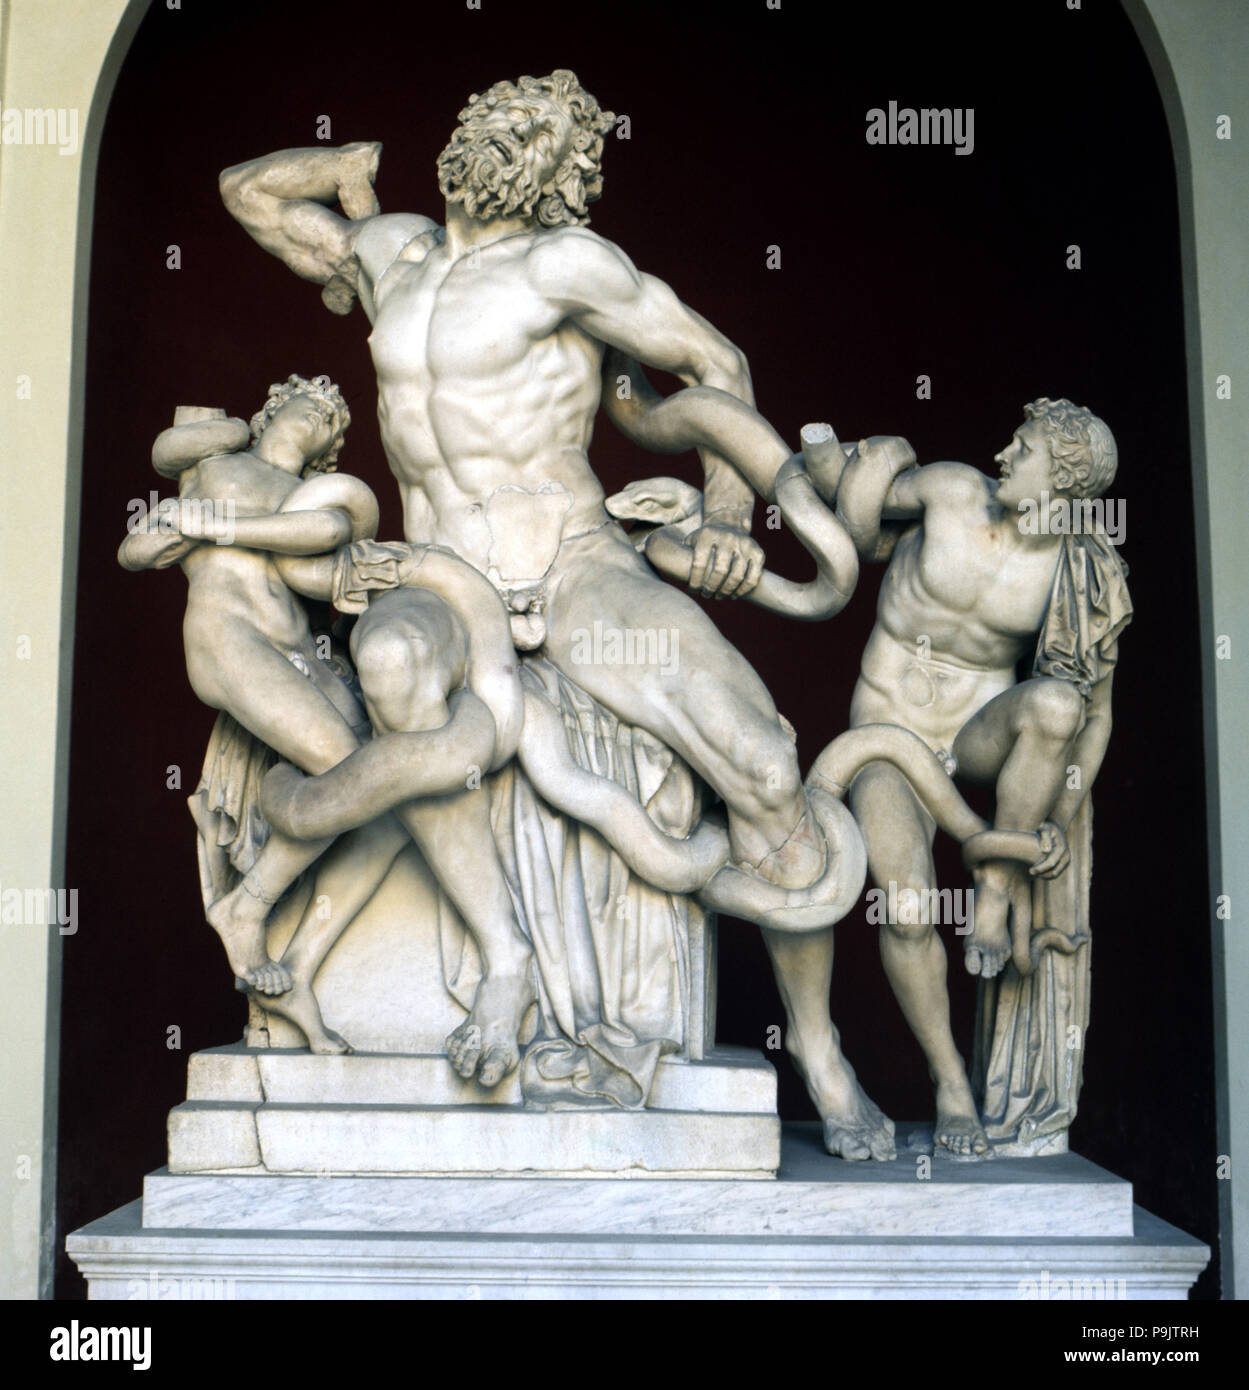 La sculpture grecque, Laocoon groupe ont découvert dans les Thermes de Titus en 1506, restauré par Michel Ange… Banque D'Images